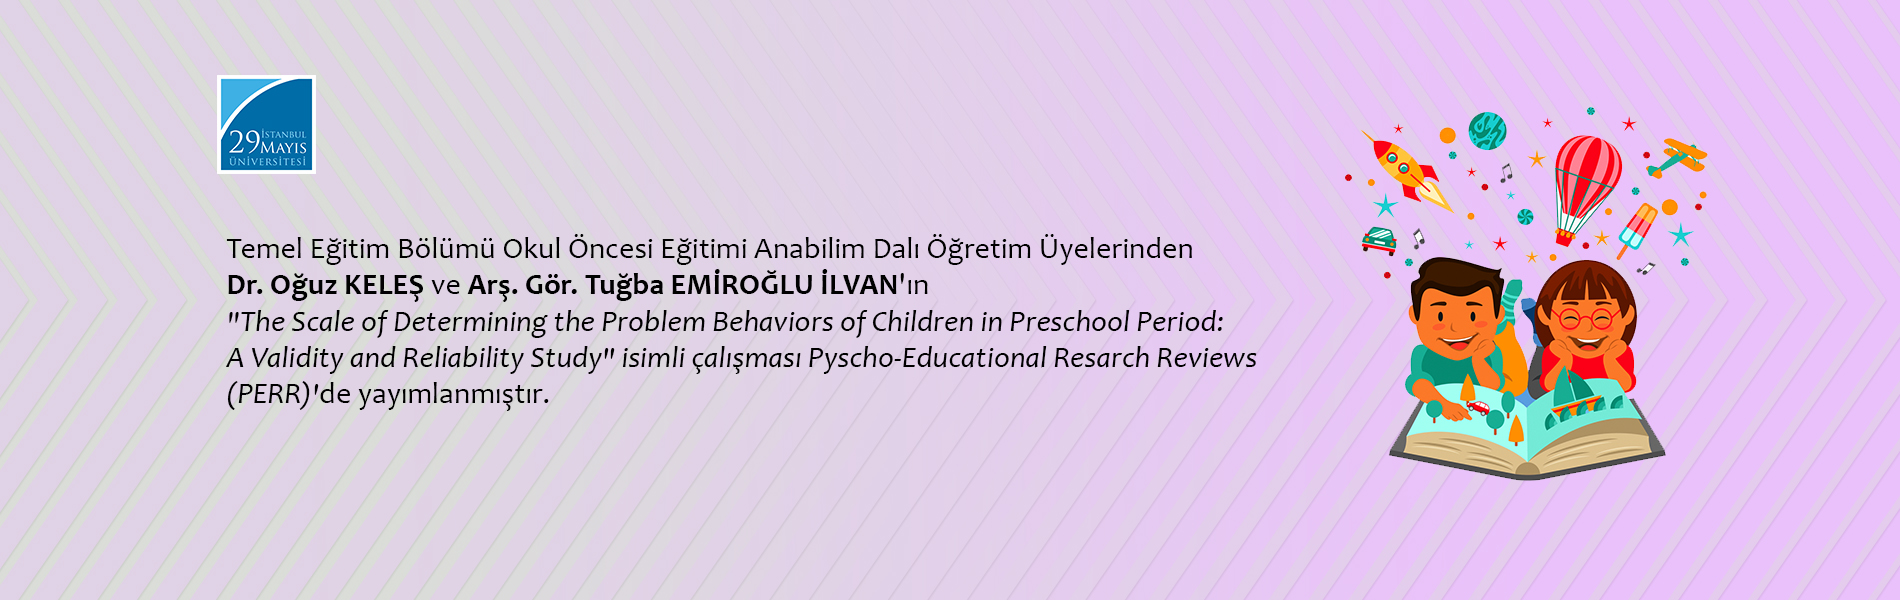 Dr. Oğuz KELEŞ ve Arş. Gör. Tuğba EMİROĞLU İLVAN'ın The Scale of Determining the Problem Behaviors of Children in Preschool Period: A Validity and Reliability Study İsimli Çalışması PERR'de Yayımlanmıştır